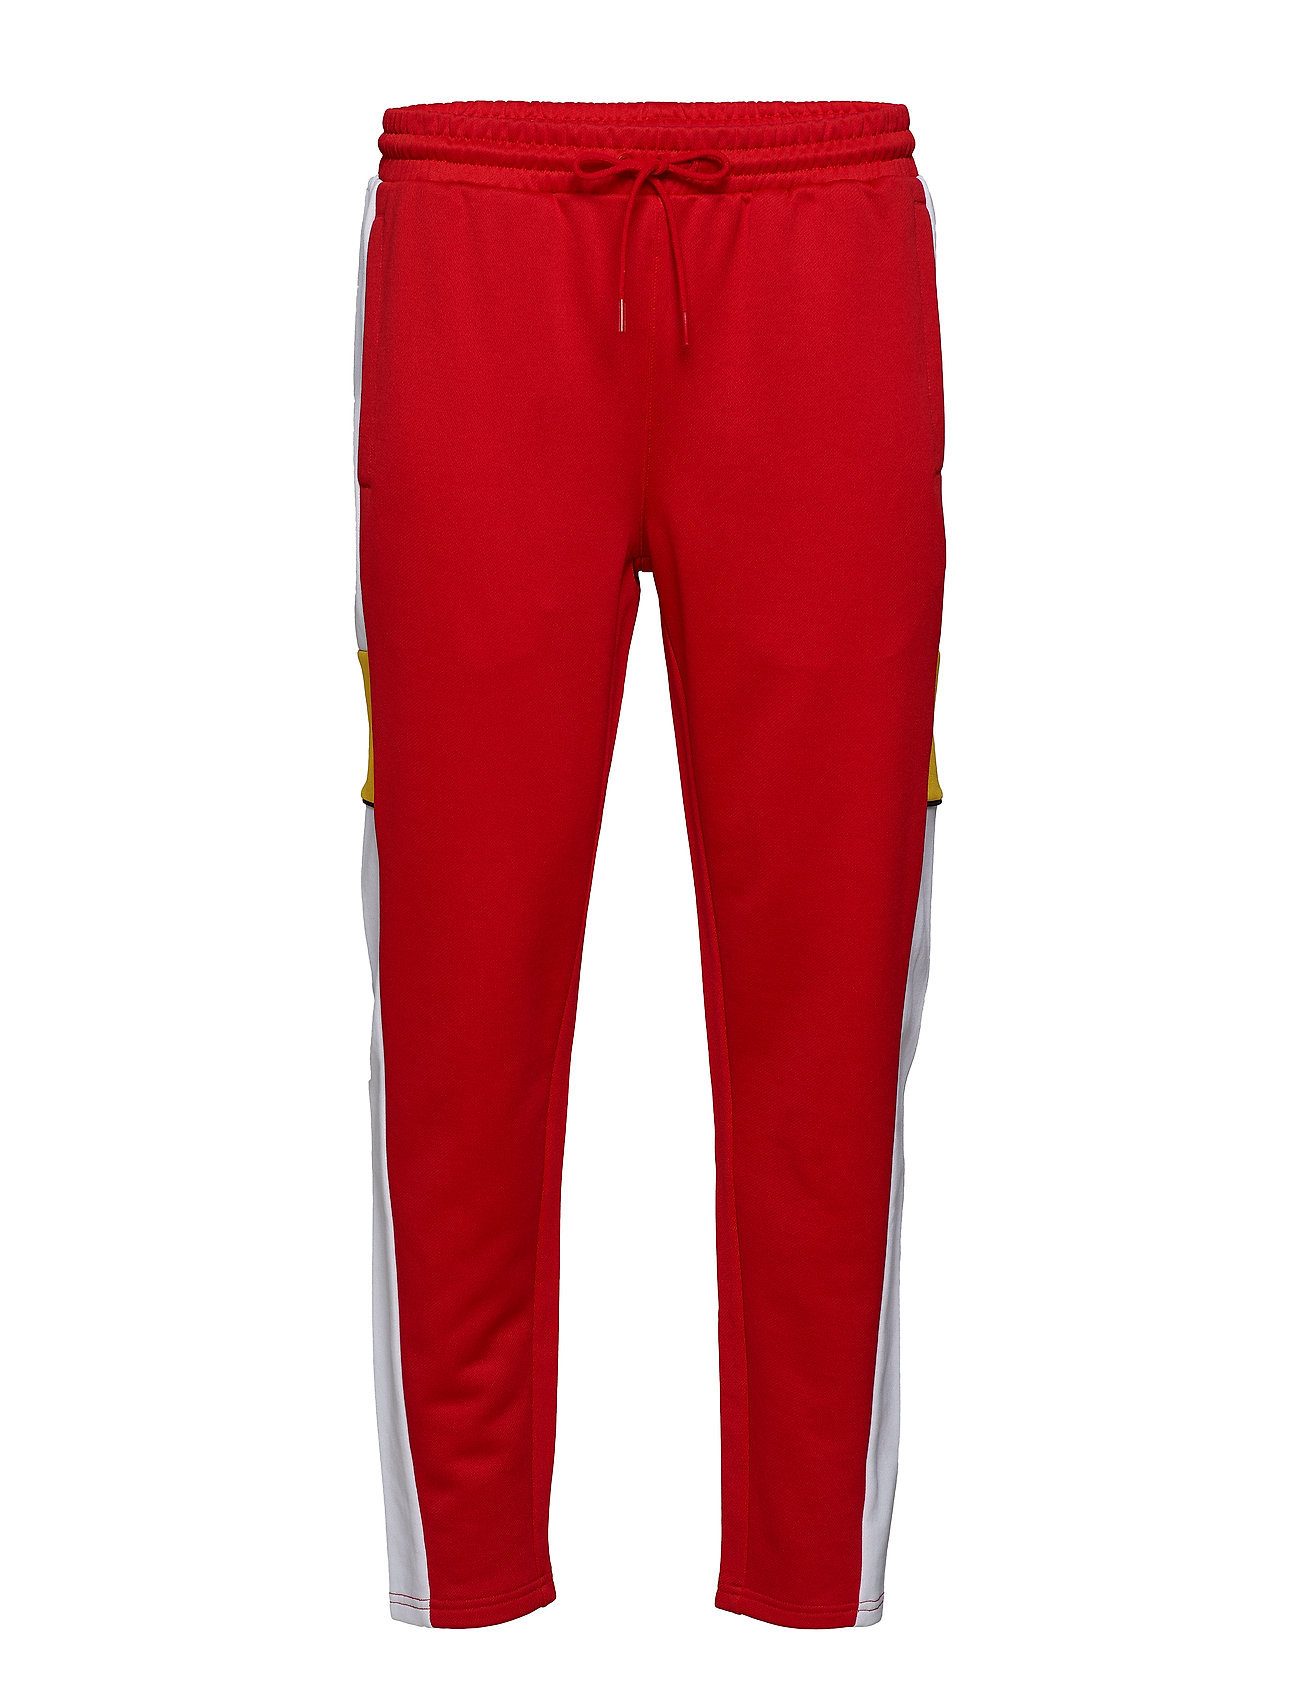 puma red pants